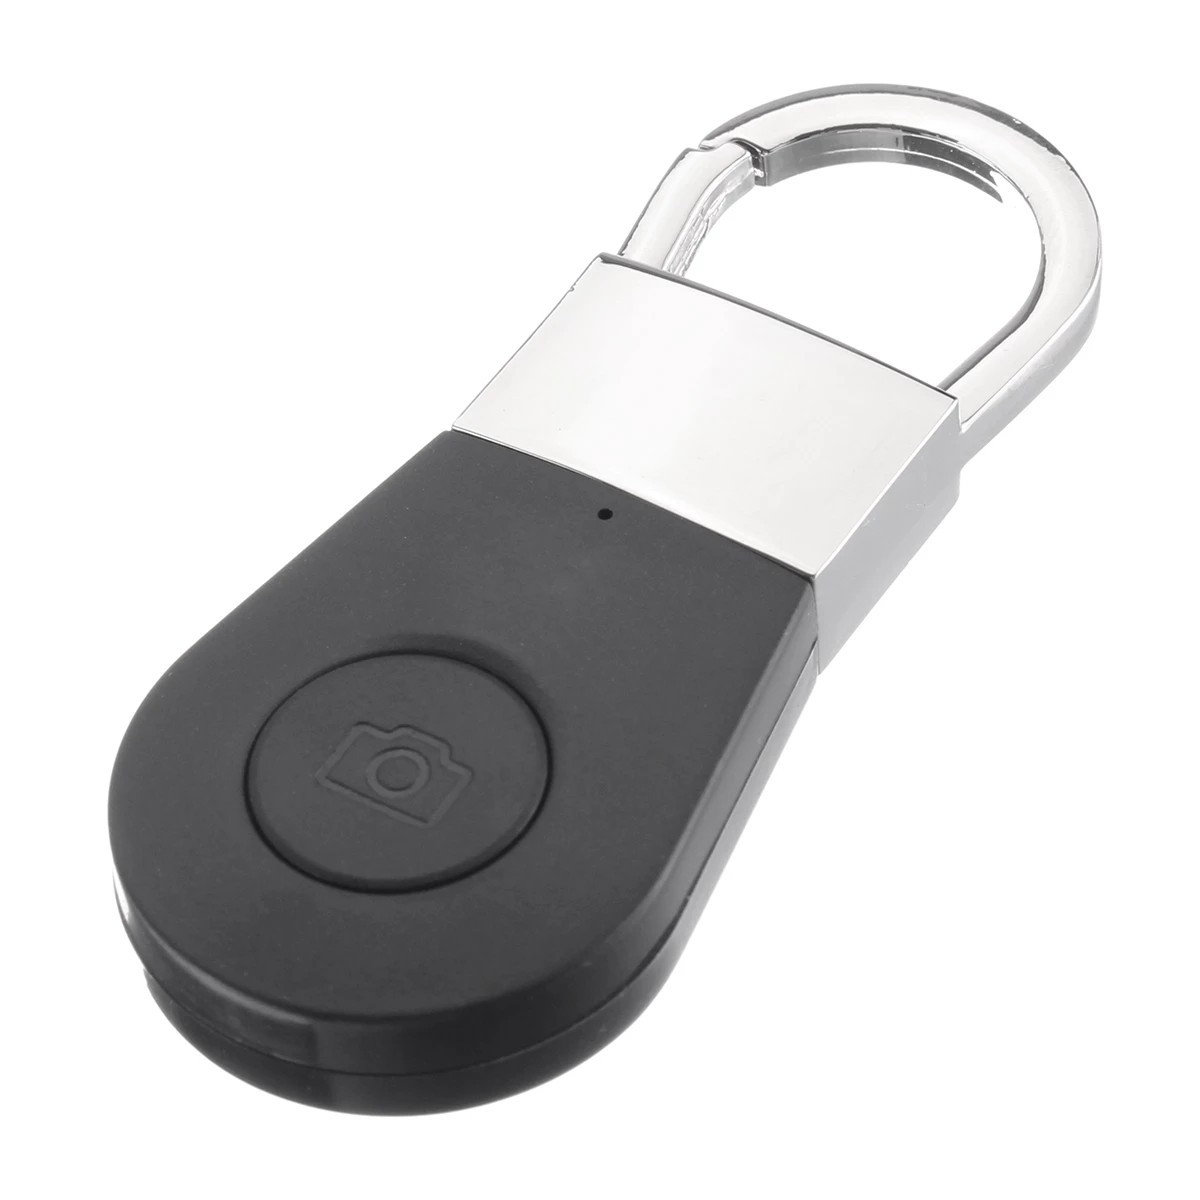 Nøglefinder - bluetooth finder til nøgler, mobiltelefon mv